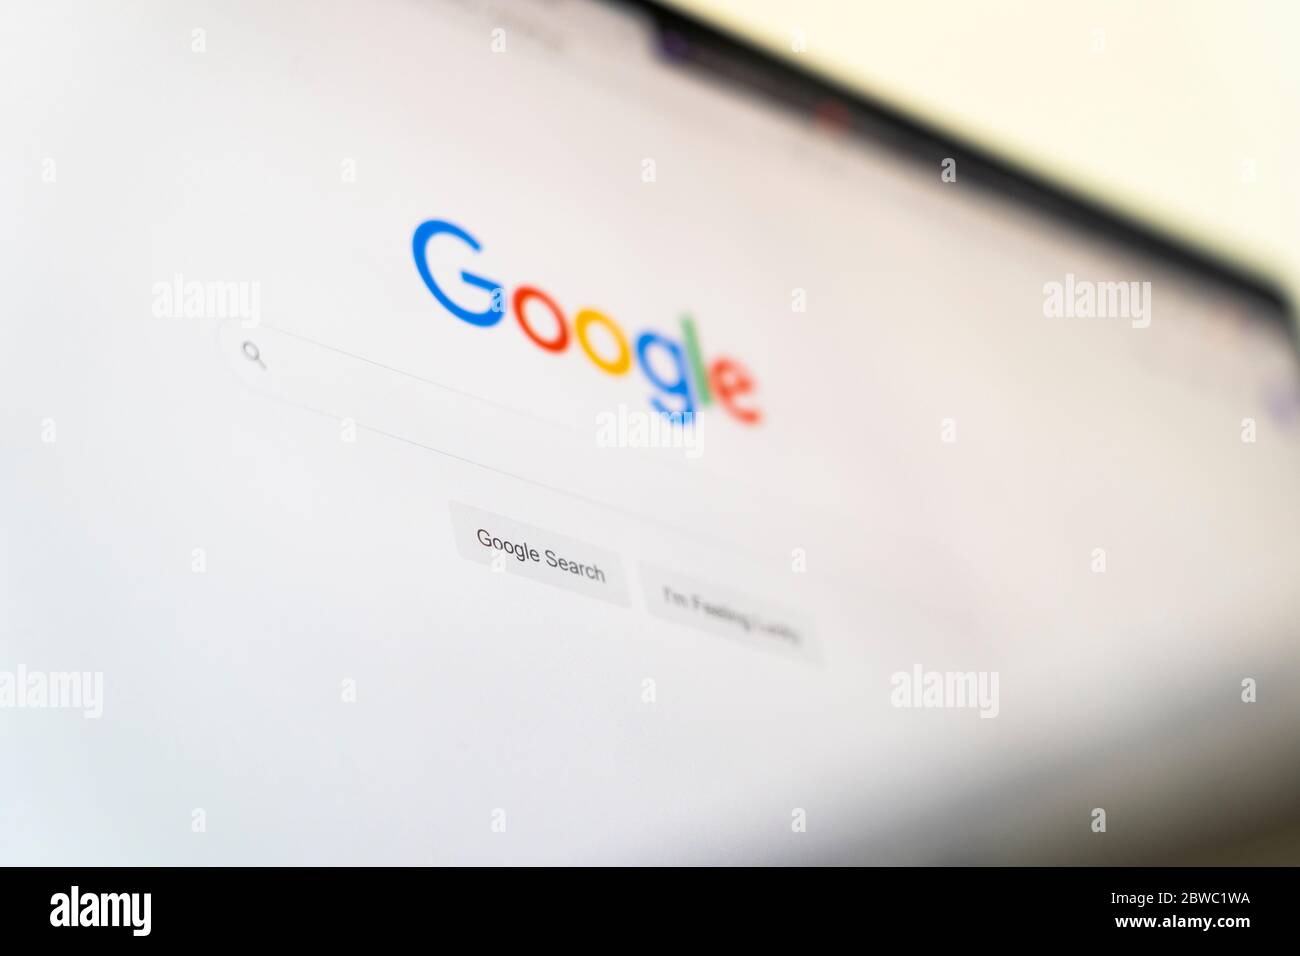 Il sito web della homepage di Google con il logo Google, la barra di ricerca e mi sento fortunato pulsante in lingua inglese su uno schermo del computer Foto Stock